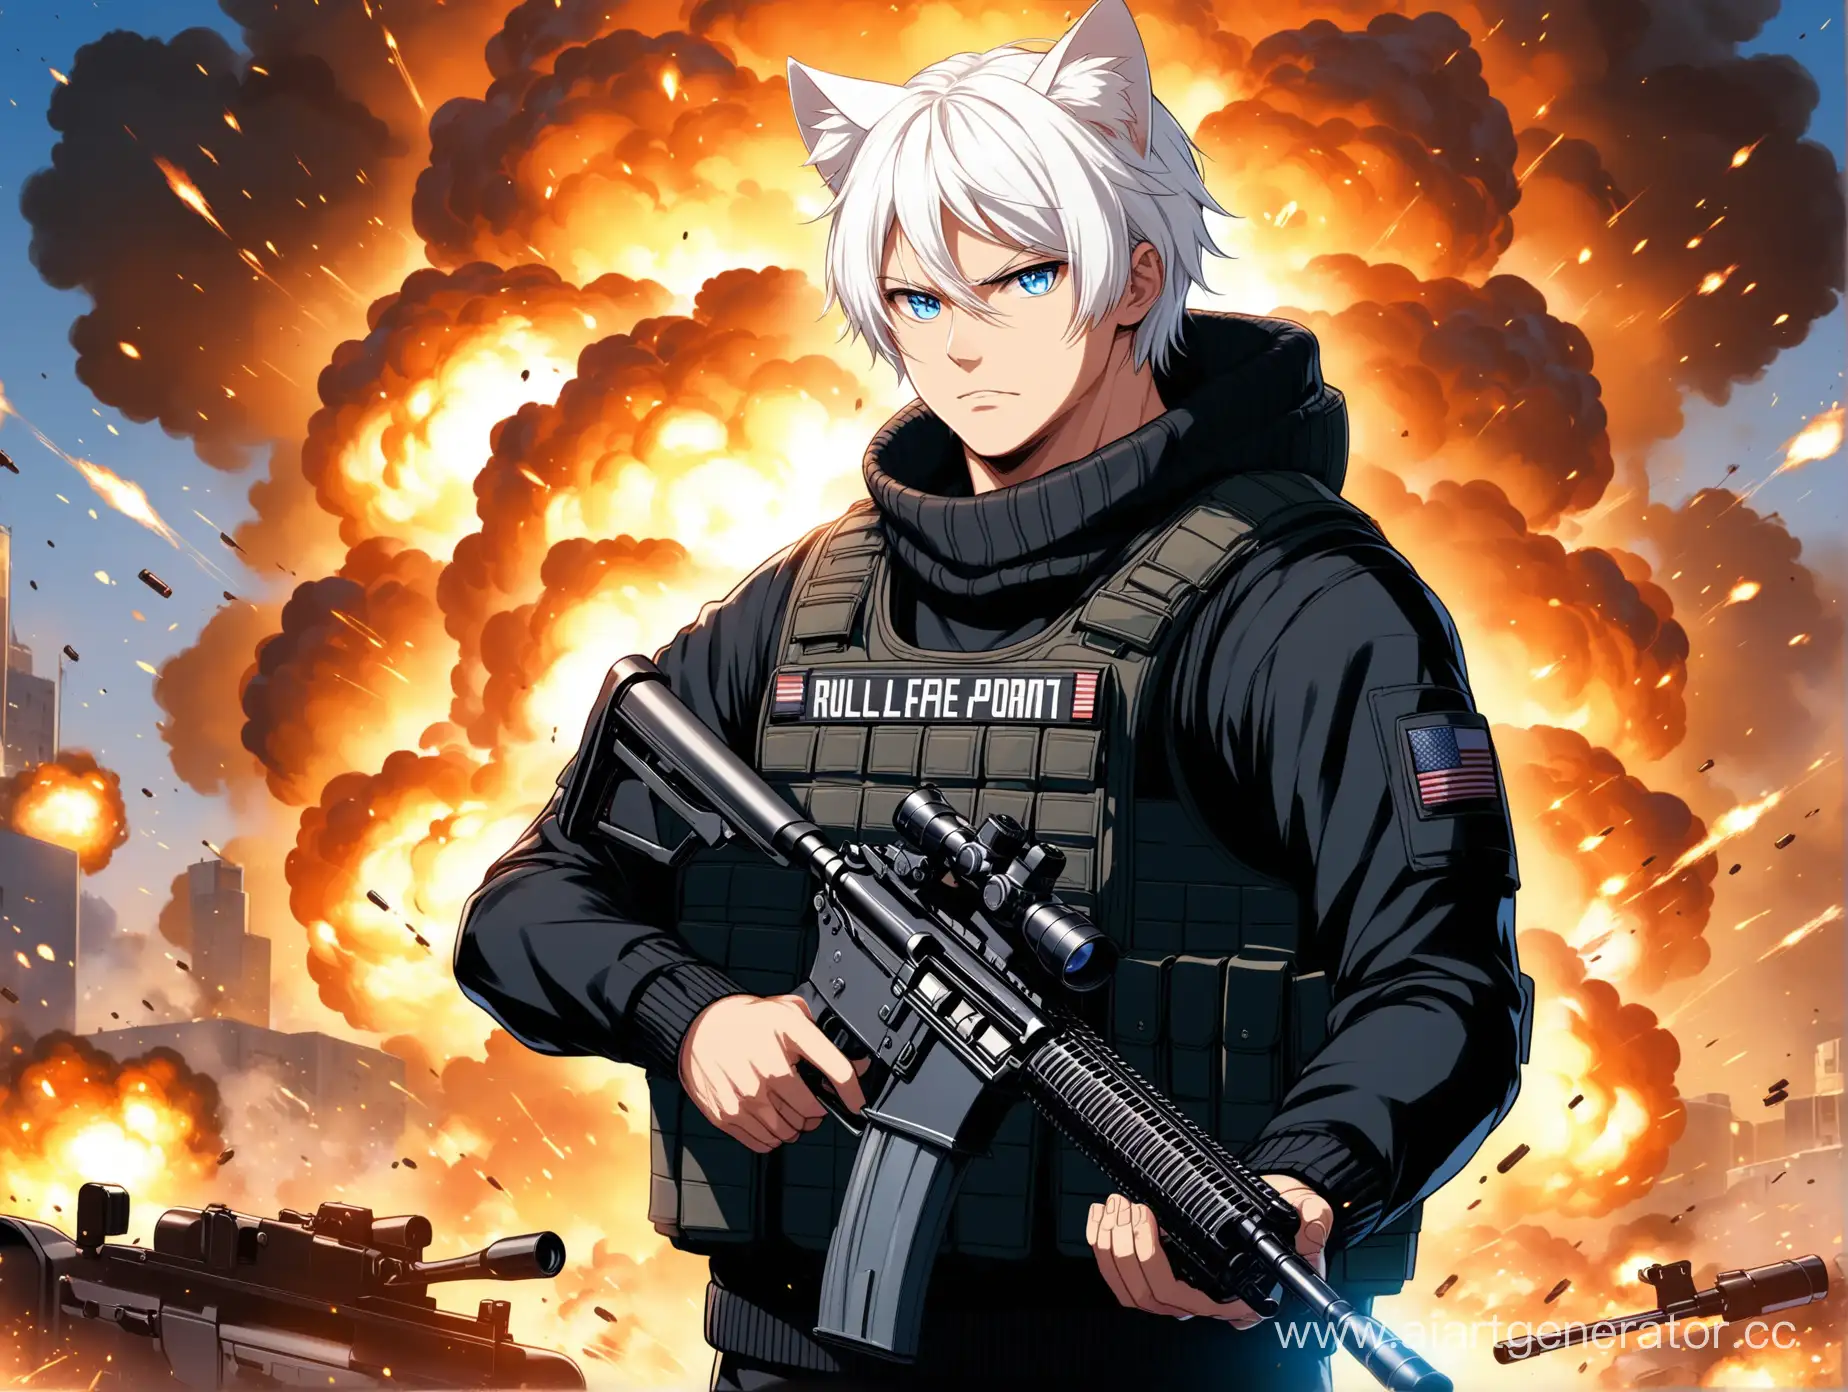 Мужчина с белыми волосами, с кошачьими ушами, с винтовкой в рук и в бронежилете, в чёрной кофте, с голубыми глазами, а фон со взрывами